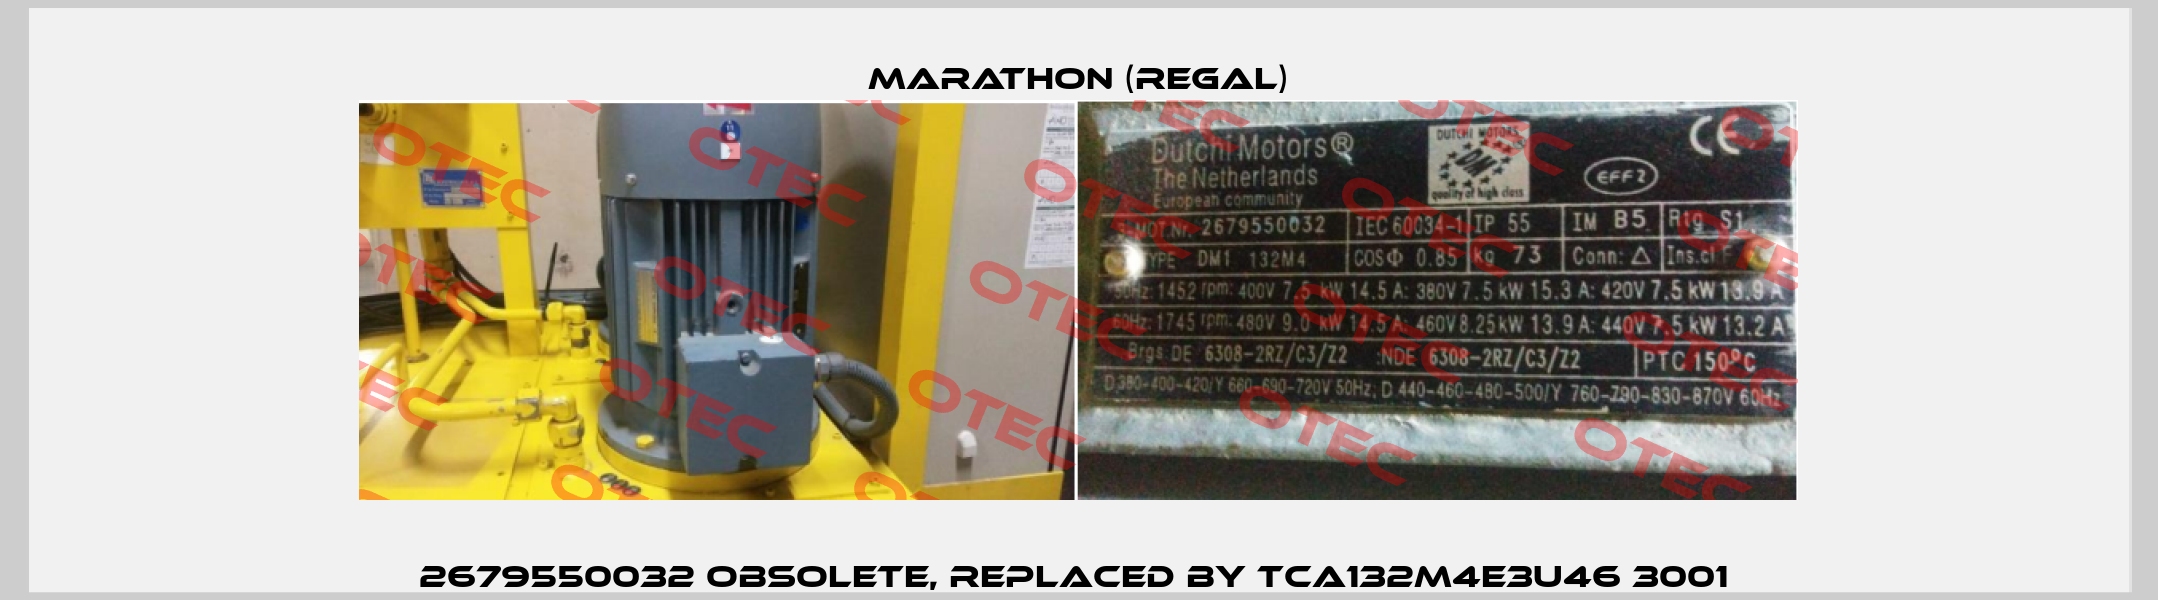 2679550032 obsolete, replaced by TCA132M4E3U46 3001  Marathon (Regal)